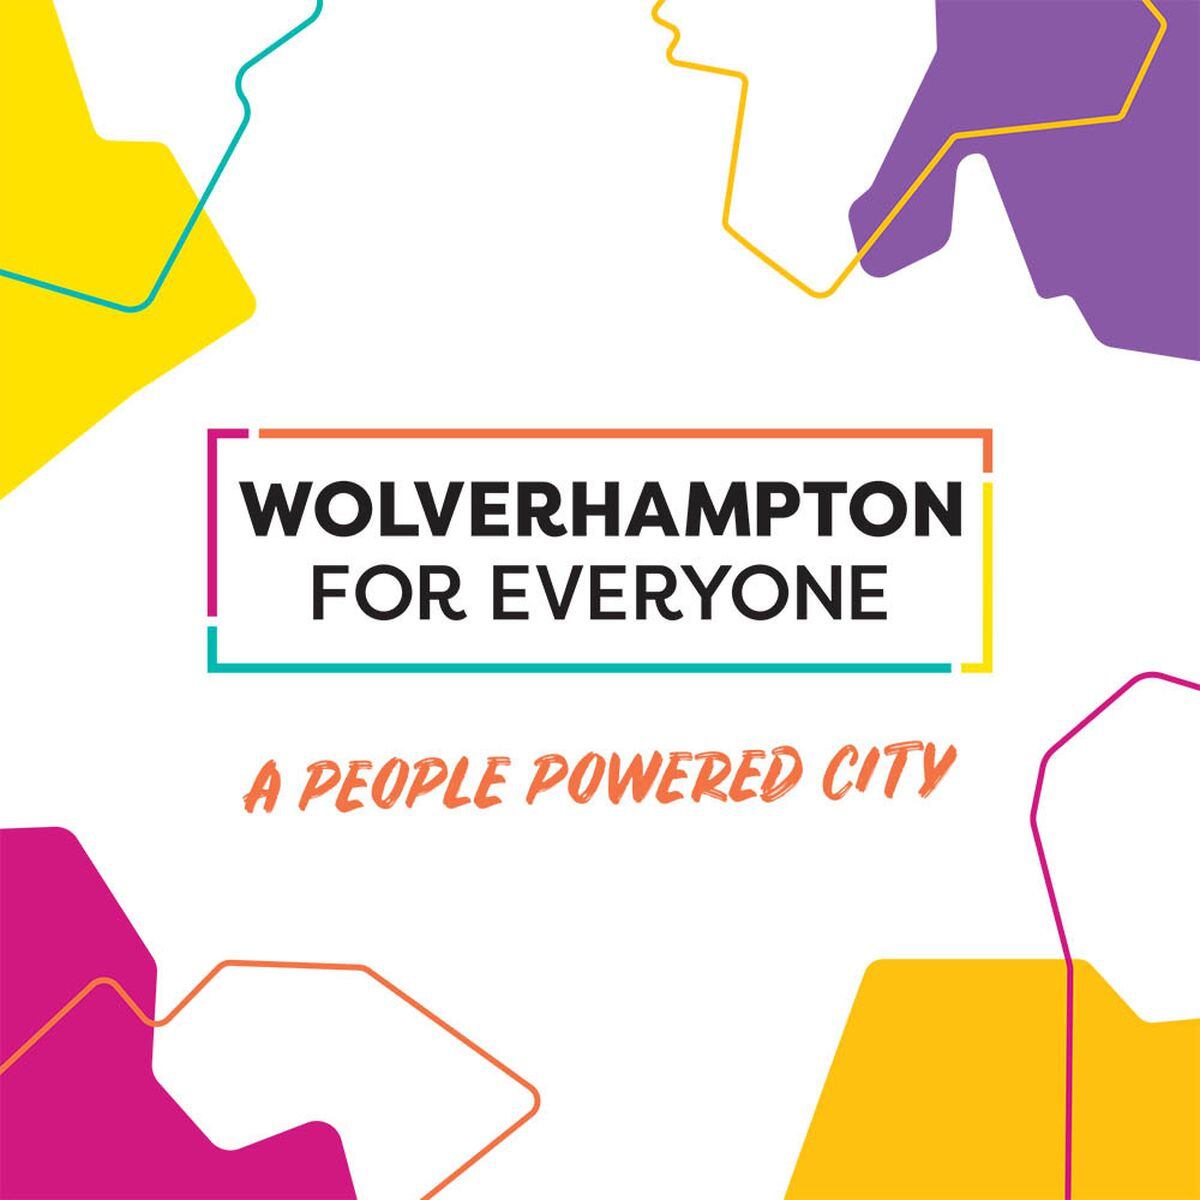 Wolverhampton For Everyone. Photo: wolverhamptonforeveryone.org/